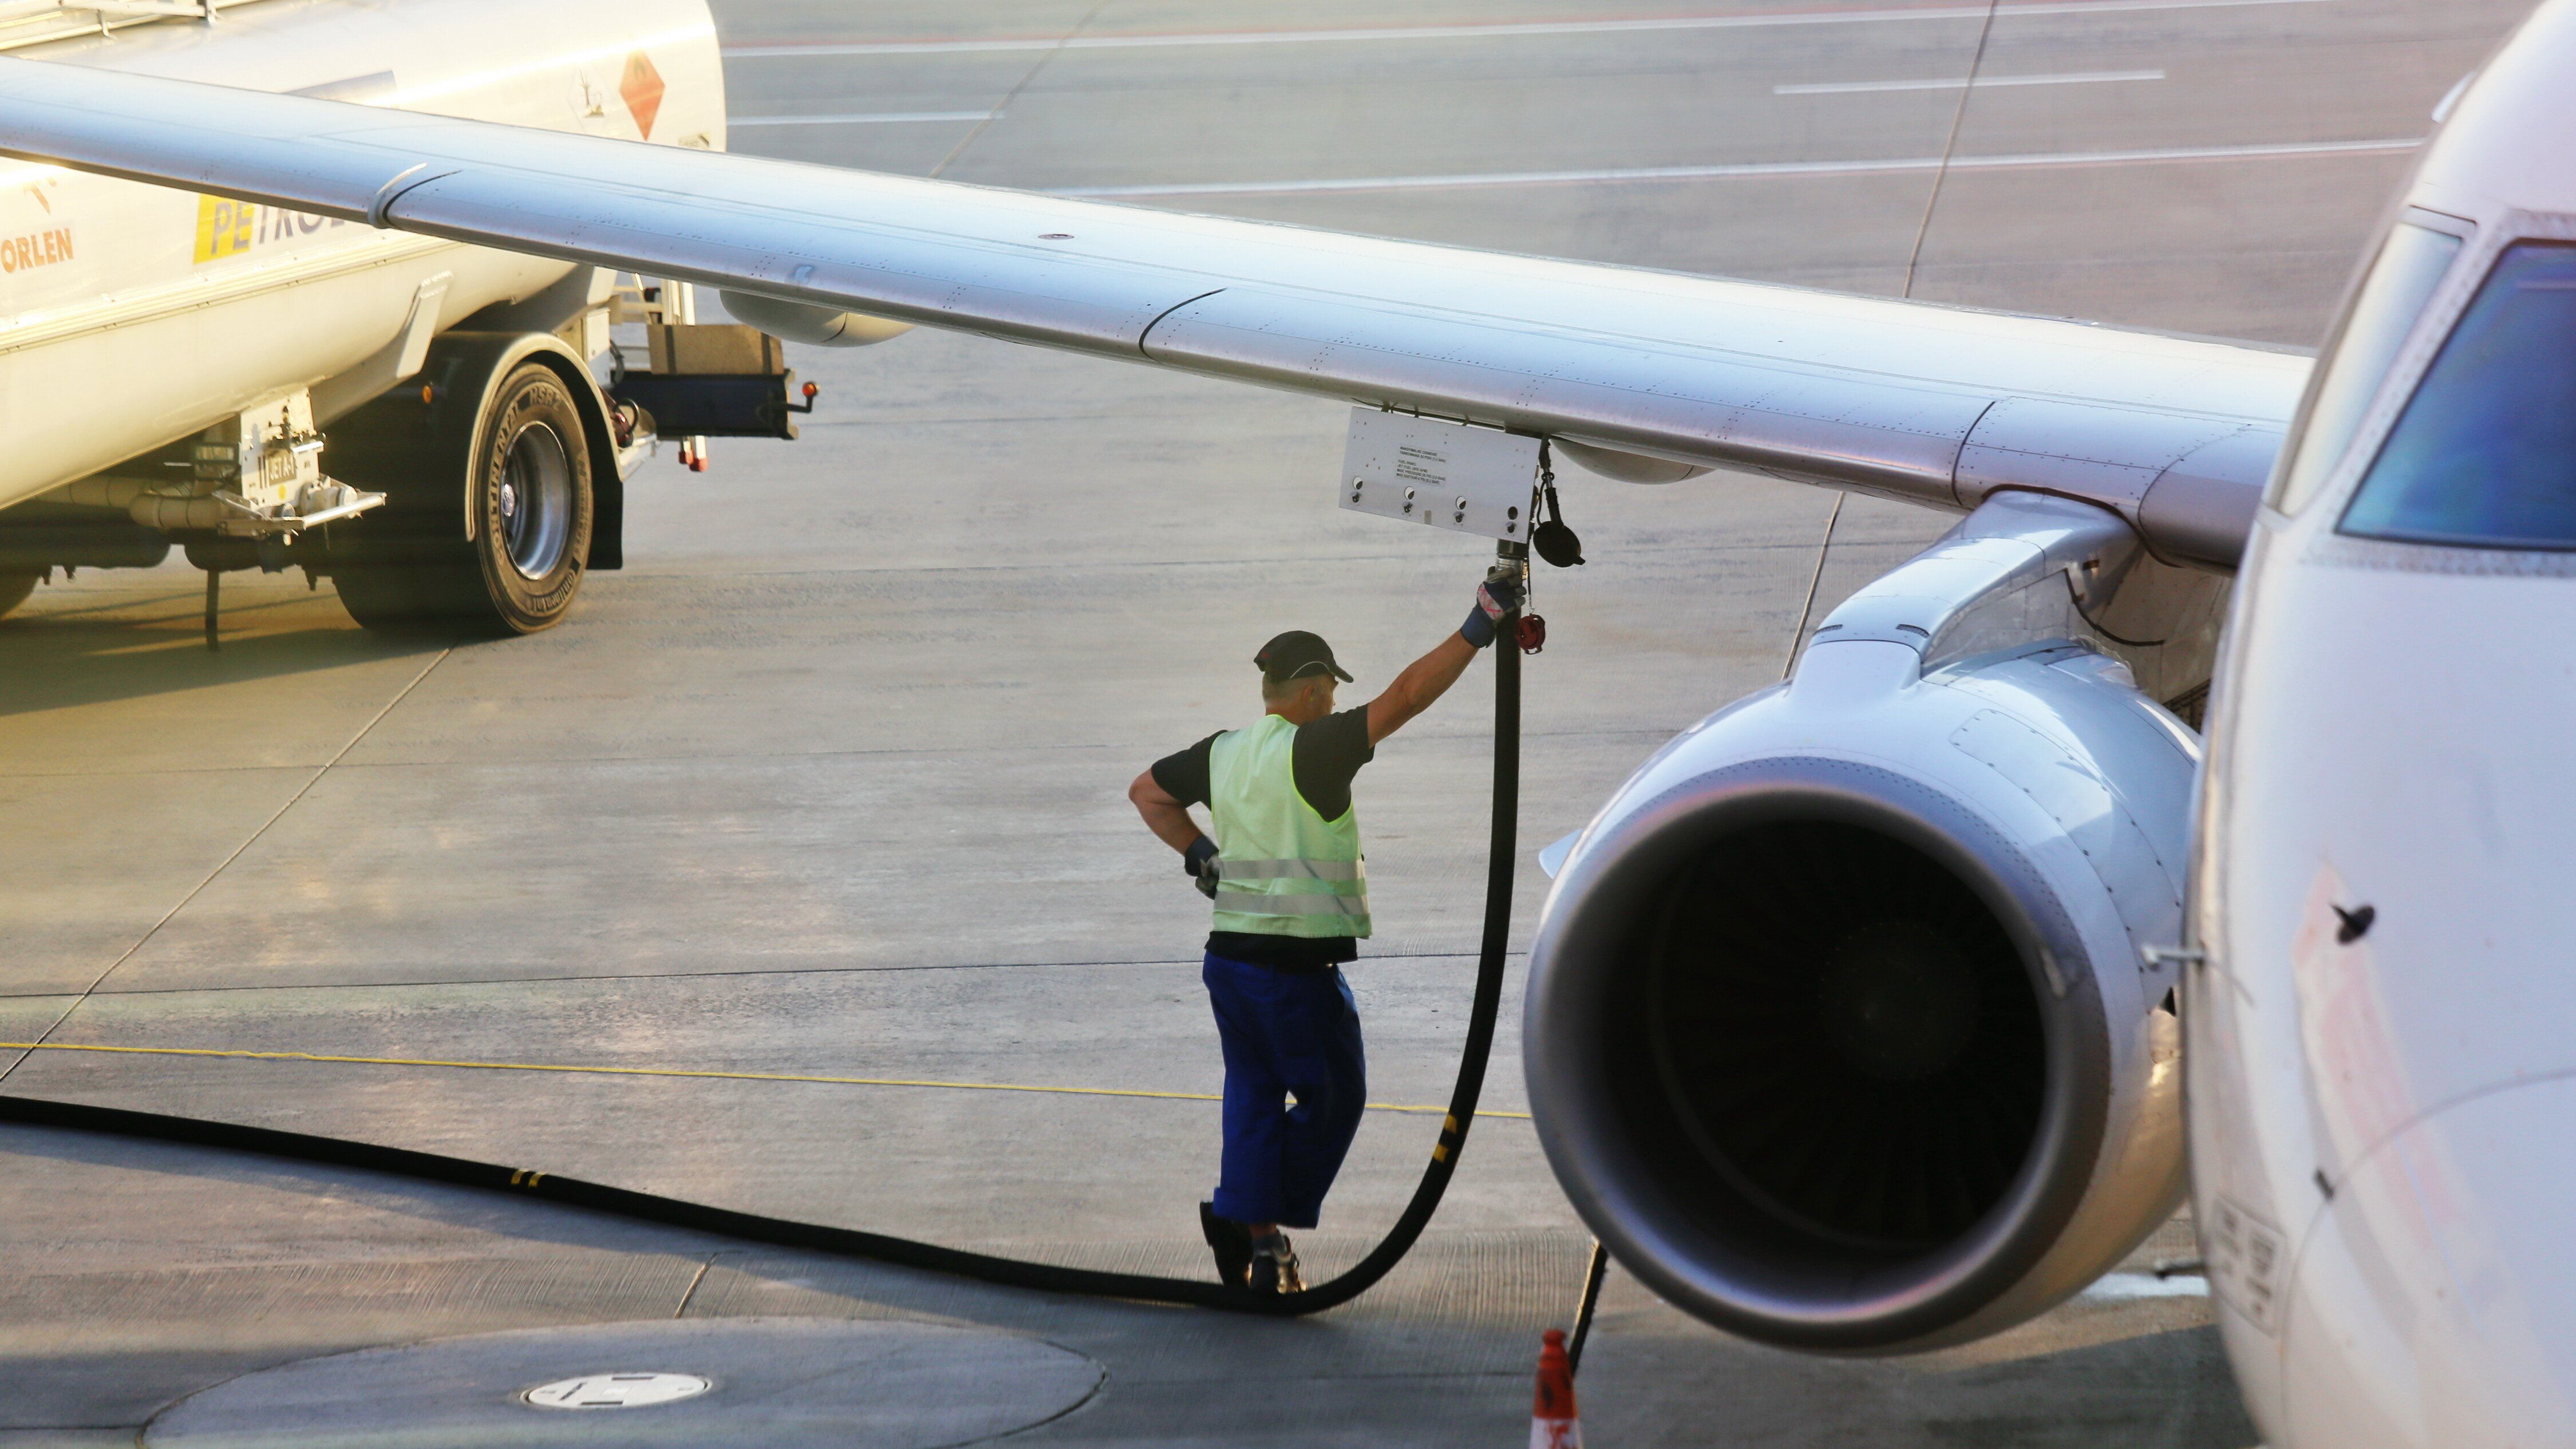 A ground crew worker refueling an aircraft.